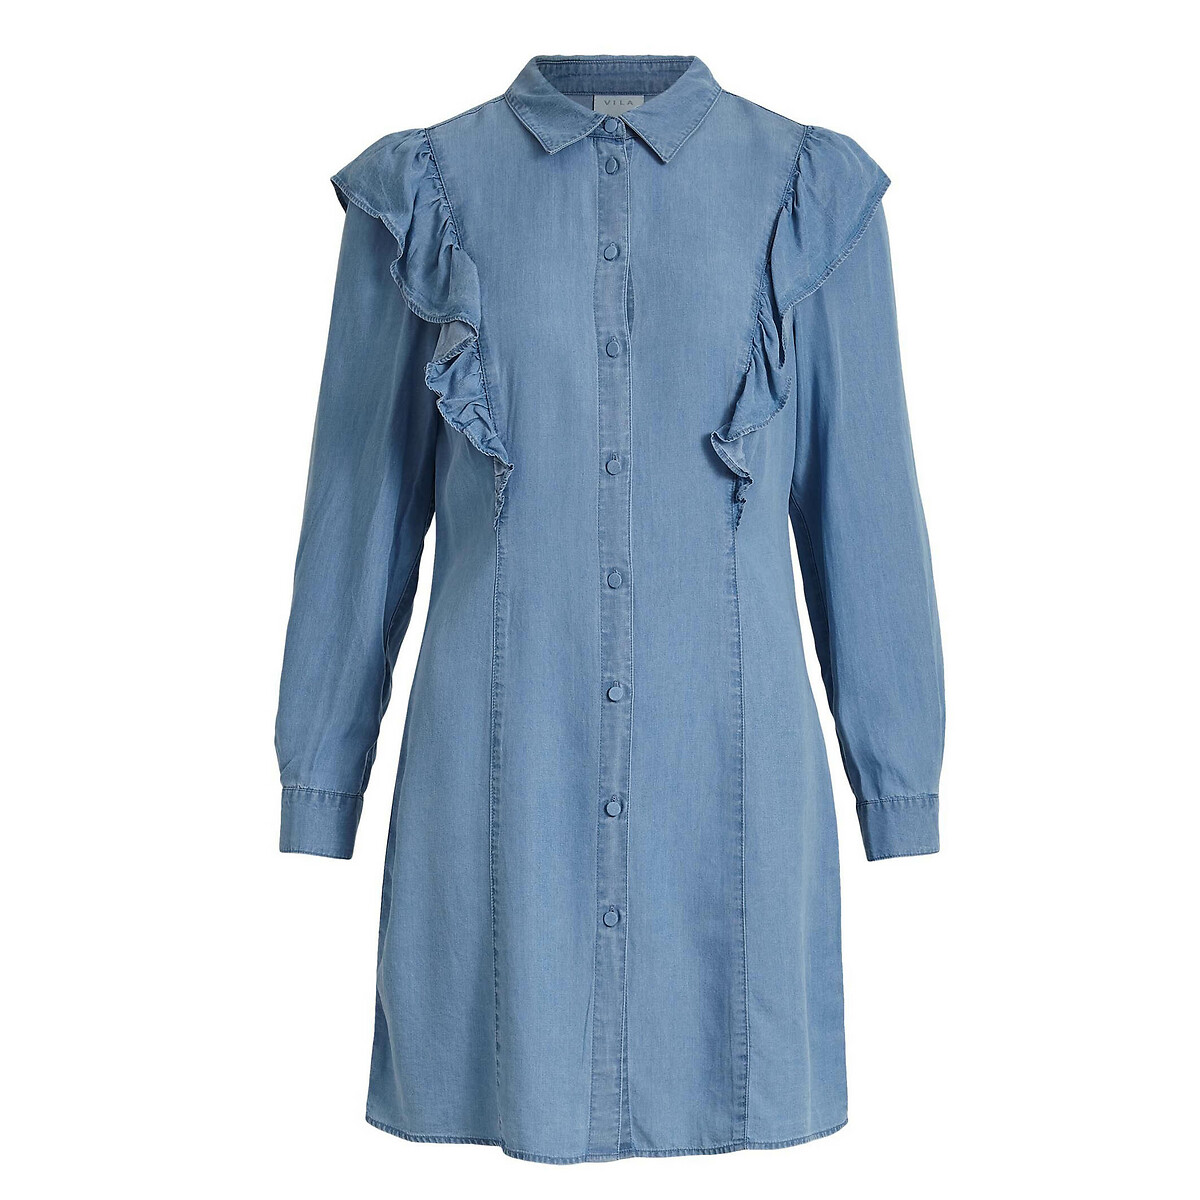 Платье-рубашка LaRedoute С воланами из джинсовой ткани 34 (FR) - 40 (RUS) синий, размер 34 (FR) - 40 (RUS) С воланами из джинсовой ткани 34 (FR) - 40 (RUS) синий - фото 5